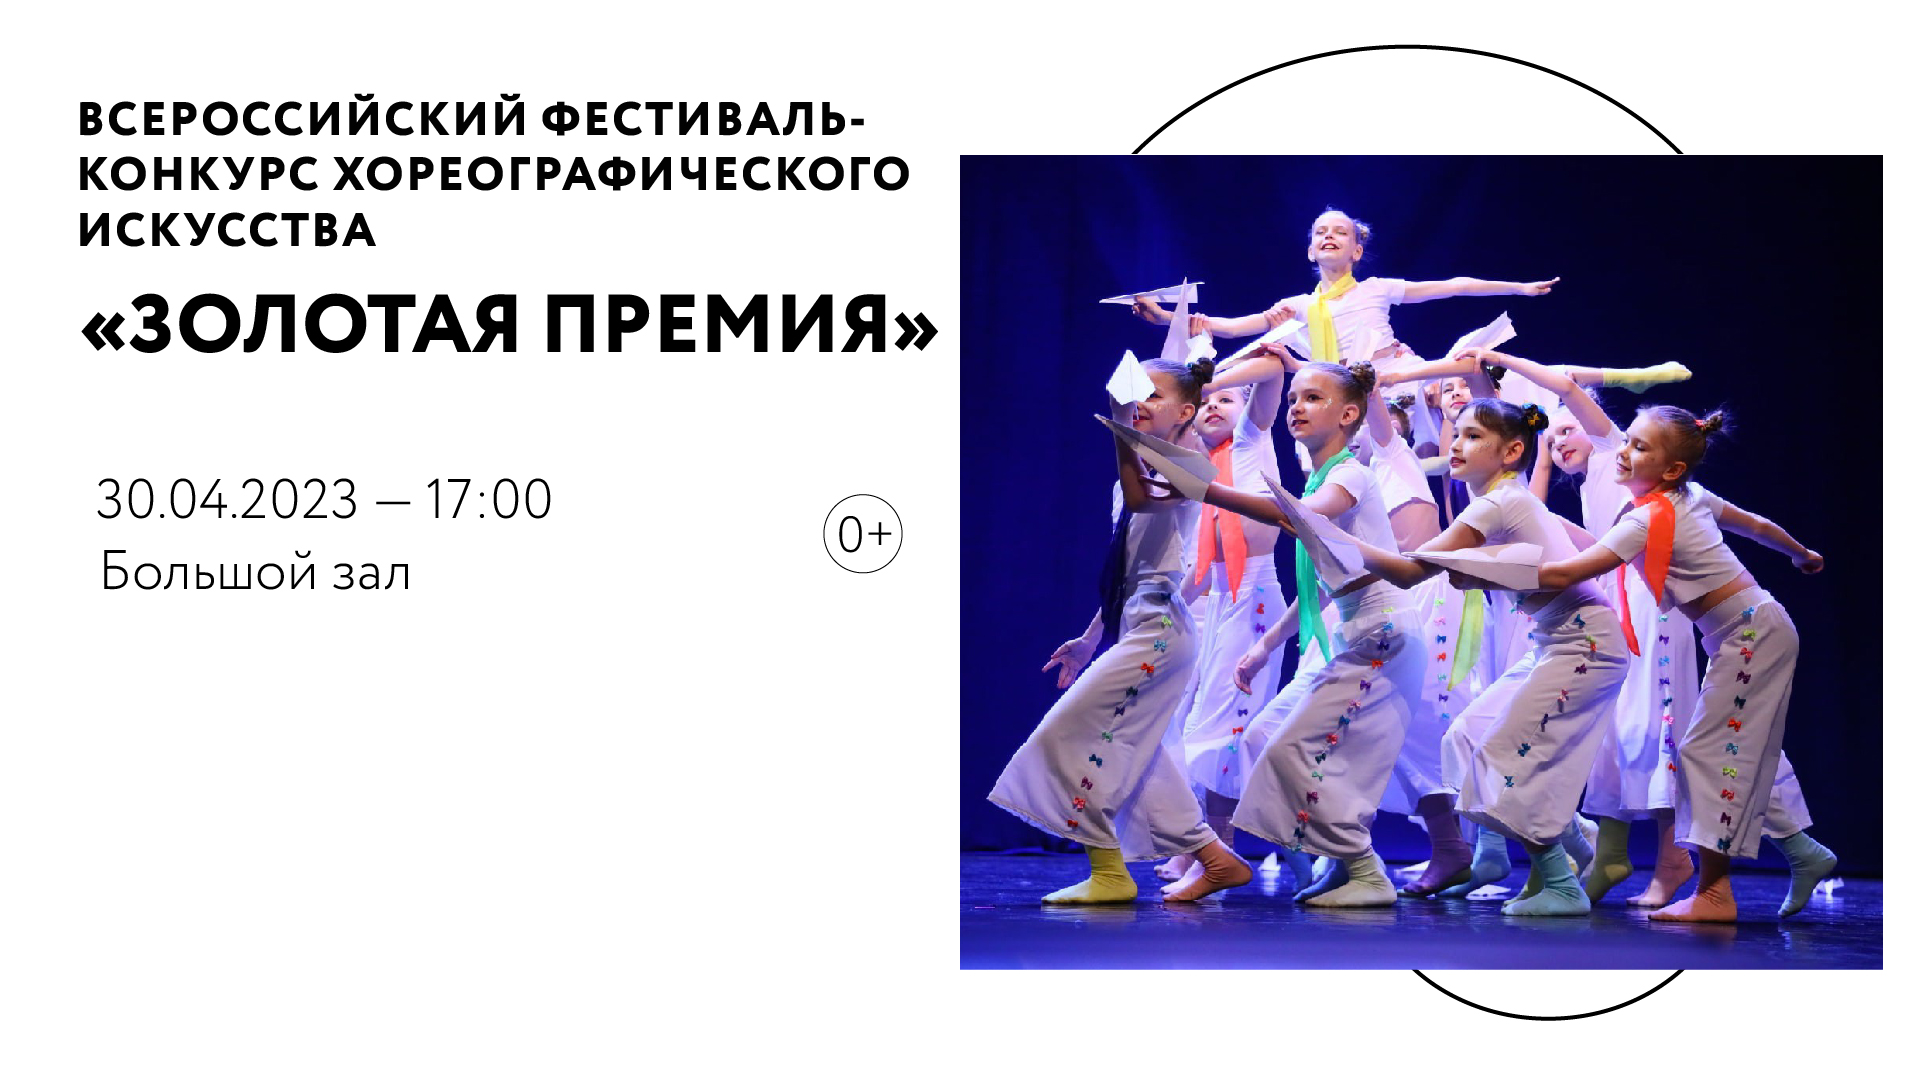 Всероссийский фестиваль-конкурс хореографического искусства «Золотая премия»